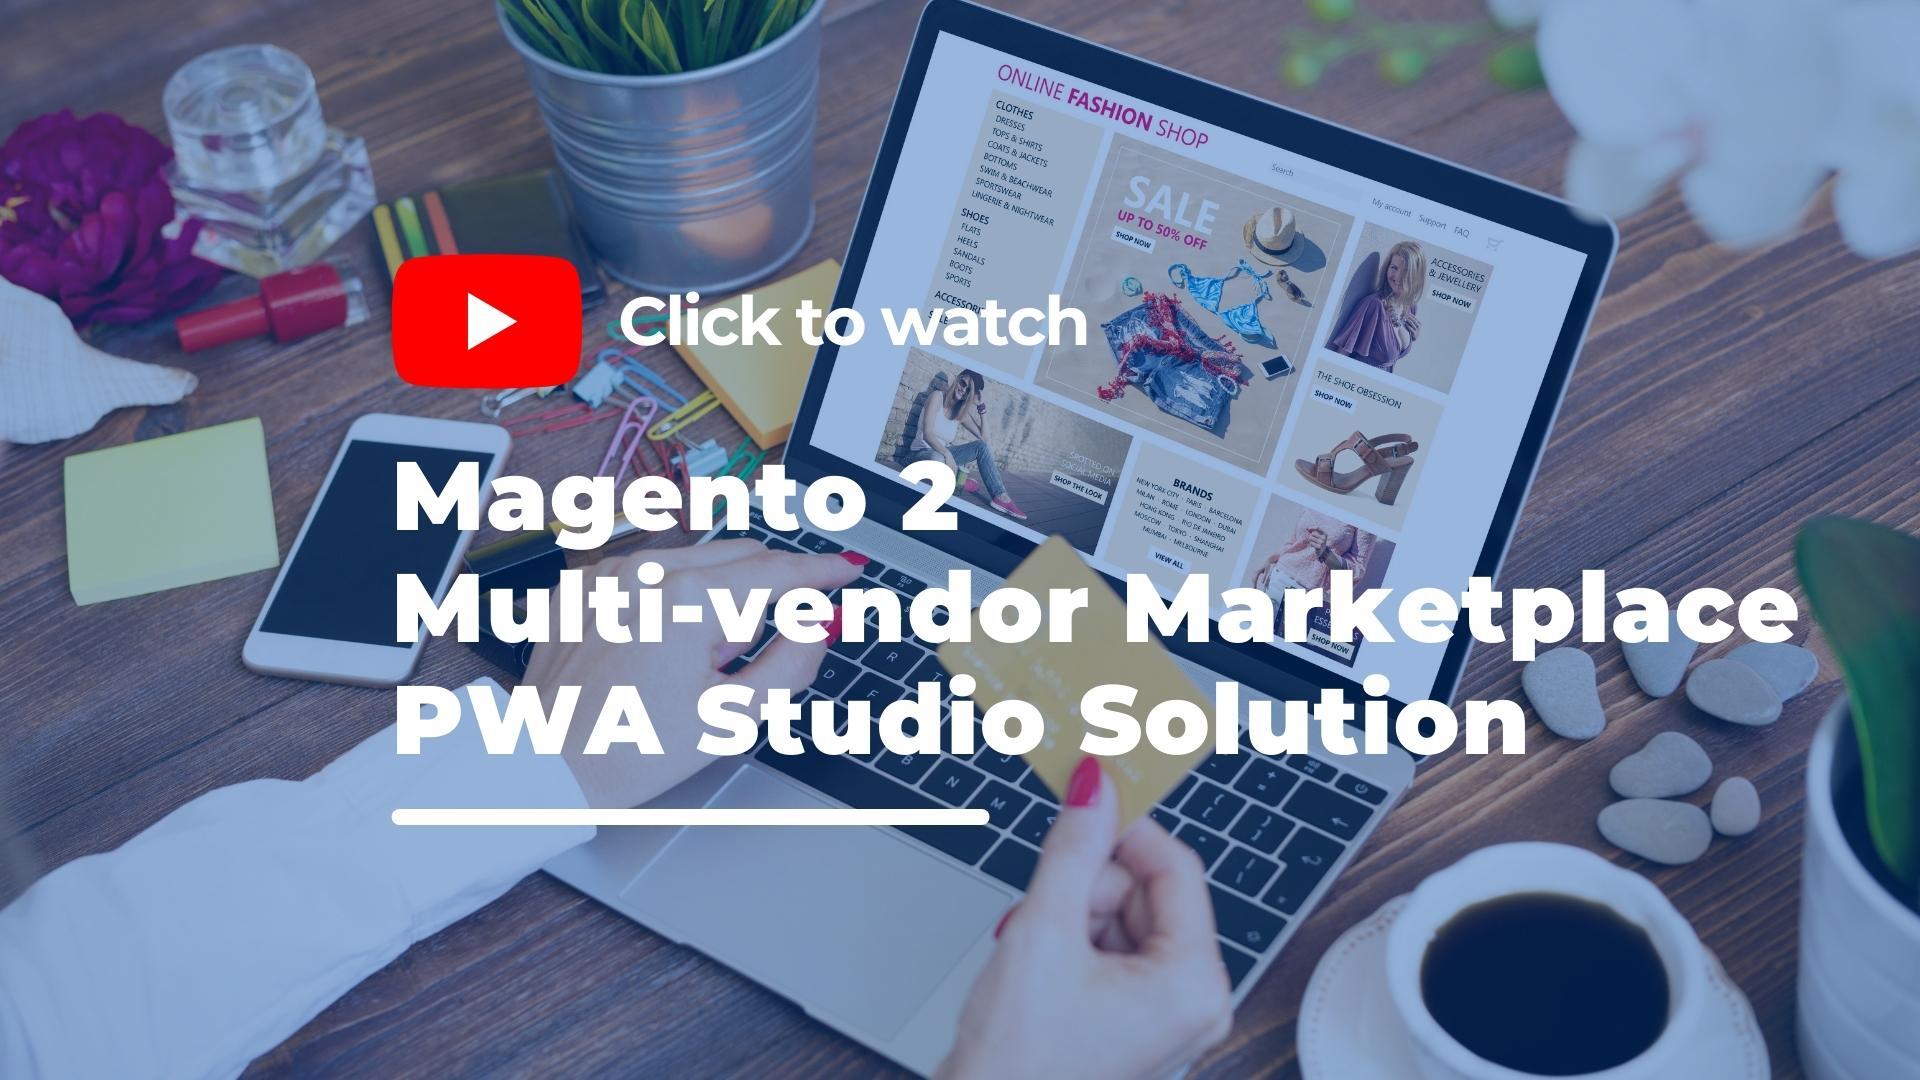 Magento 2 multivendor marketplace PWA studio solution